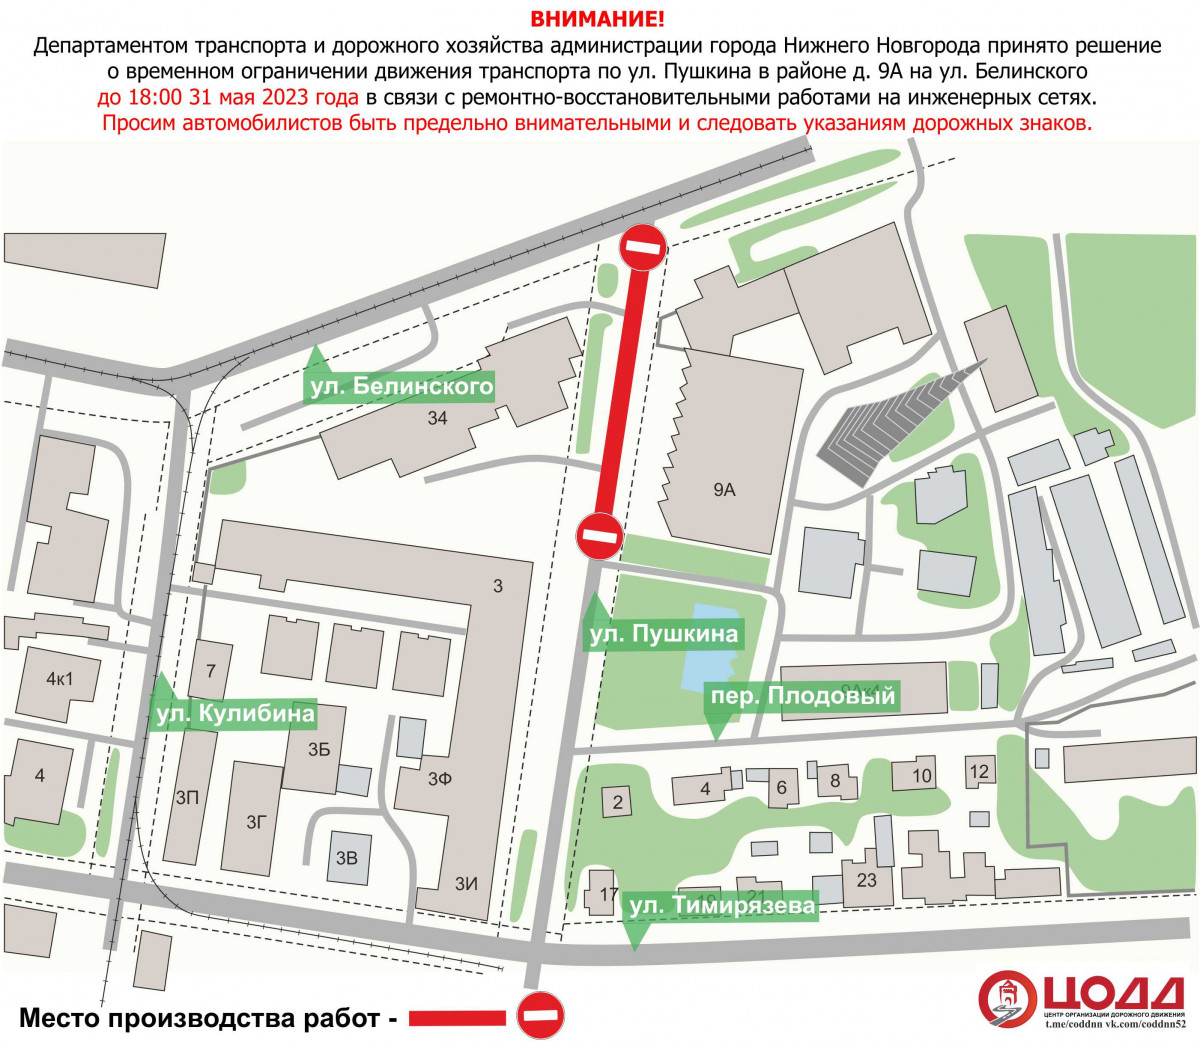 Движение транспорта на участке улицы Пушкина будет закрыто до конца мая